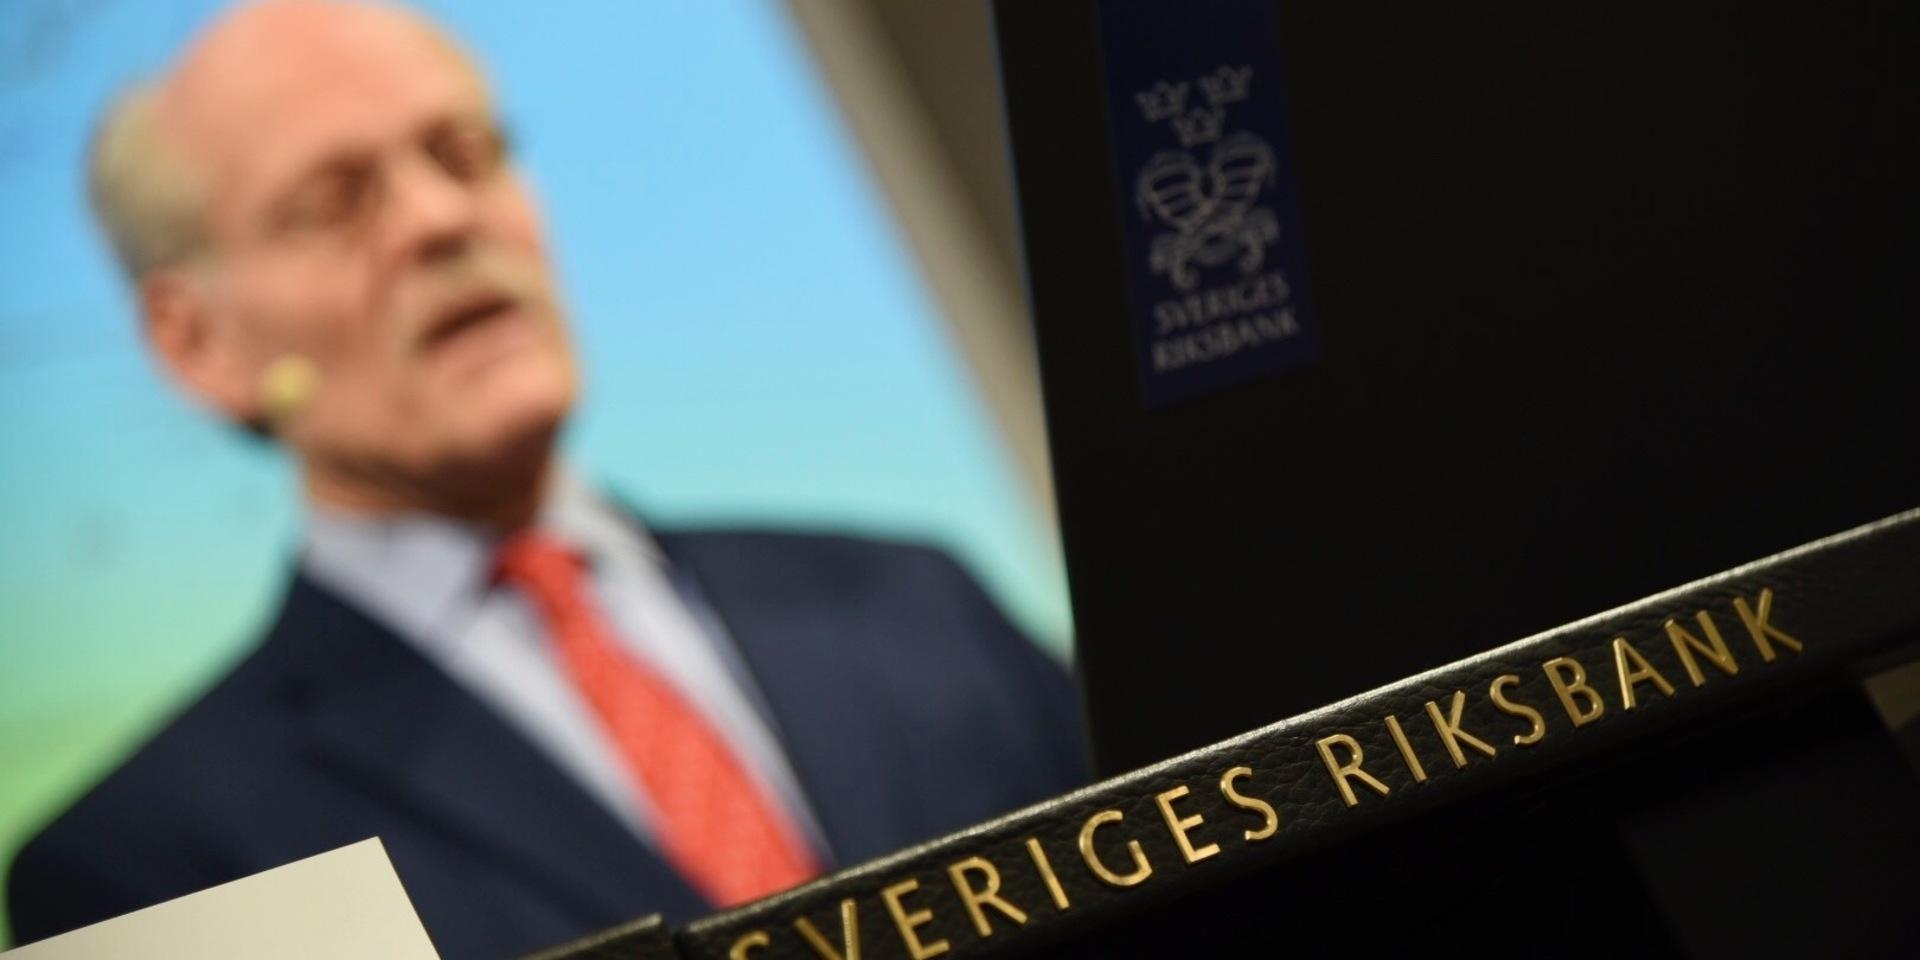 Riksbankens chef Stefan Ingves håller pressträff med anledning av räntebeskedet. Riksbanken höjer reporäntan från 0,50 procent till 0,25 procent,